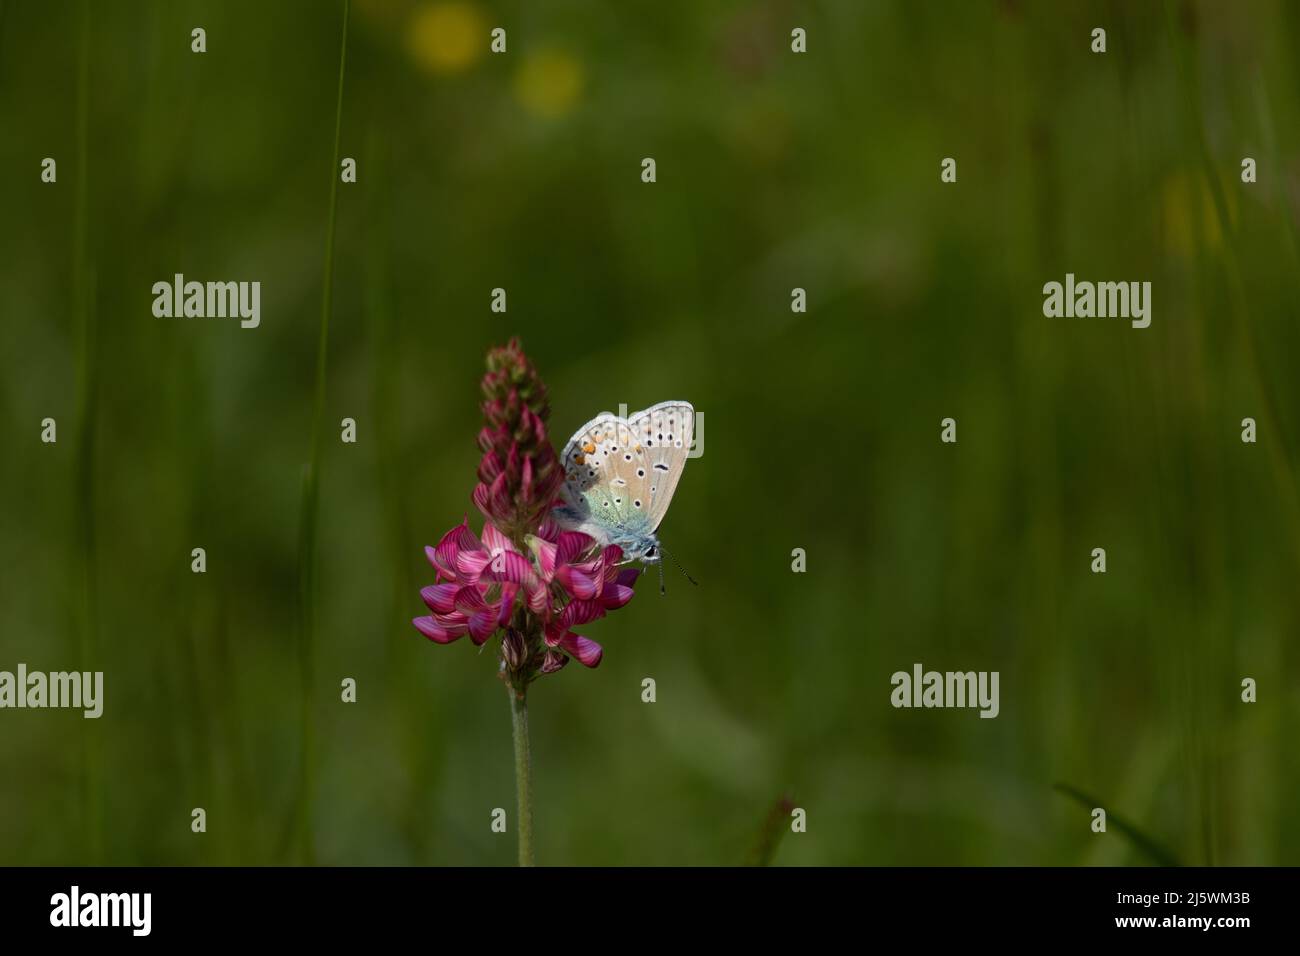 Un papillon céleste qui butine une fleur des champs Foto Stock